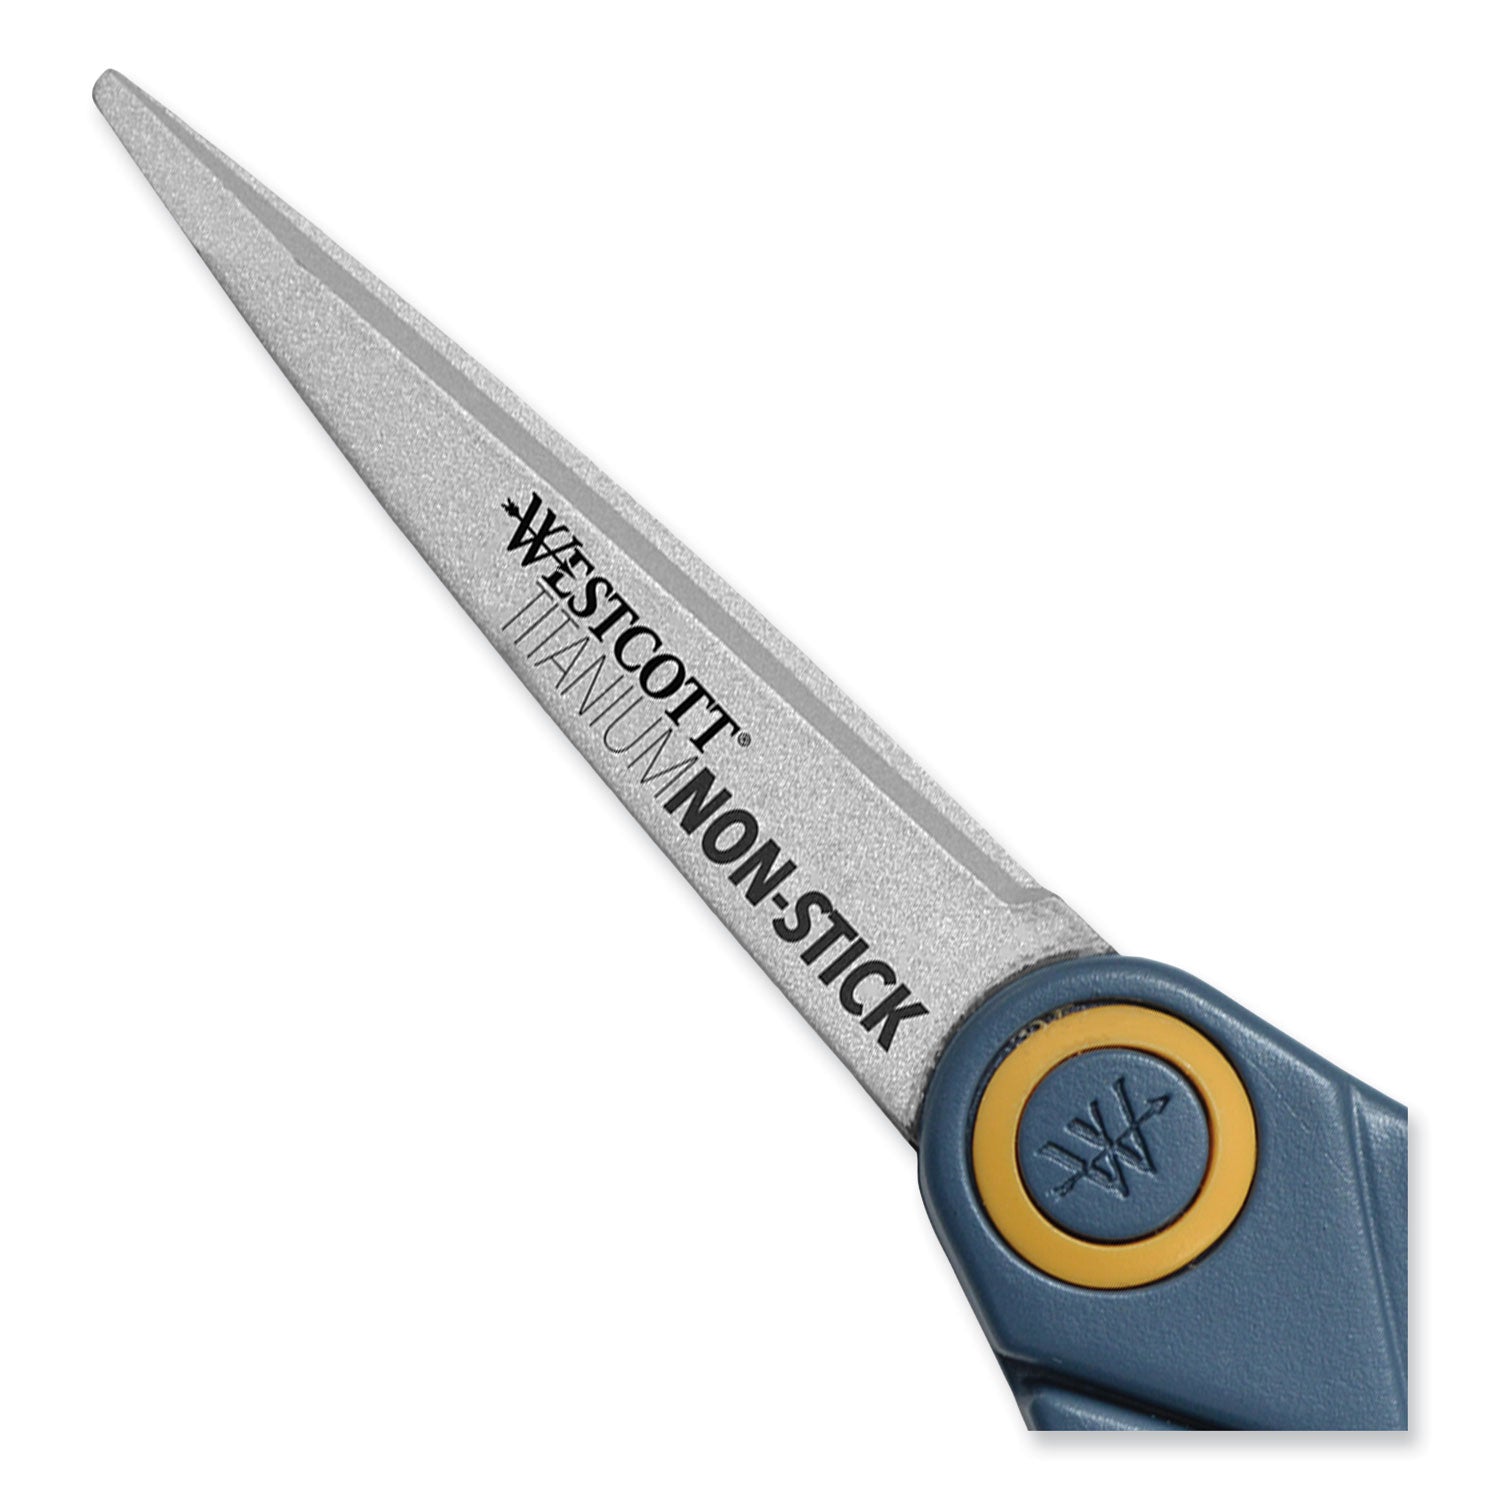 titanium-bonded-scissors-5-long-gray-orange-straight-handle_wtc14881 - 4